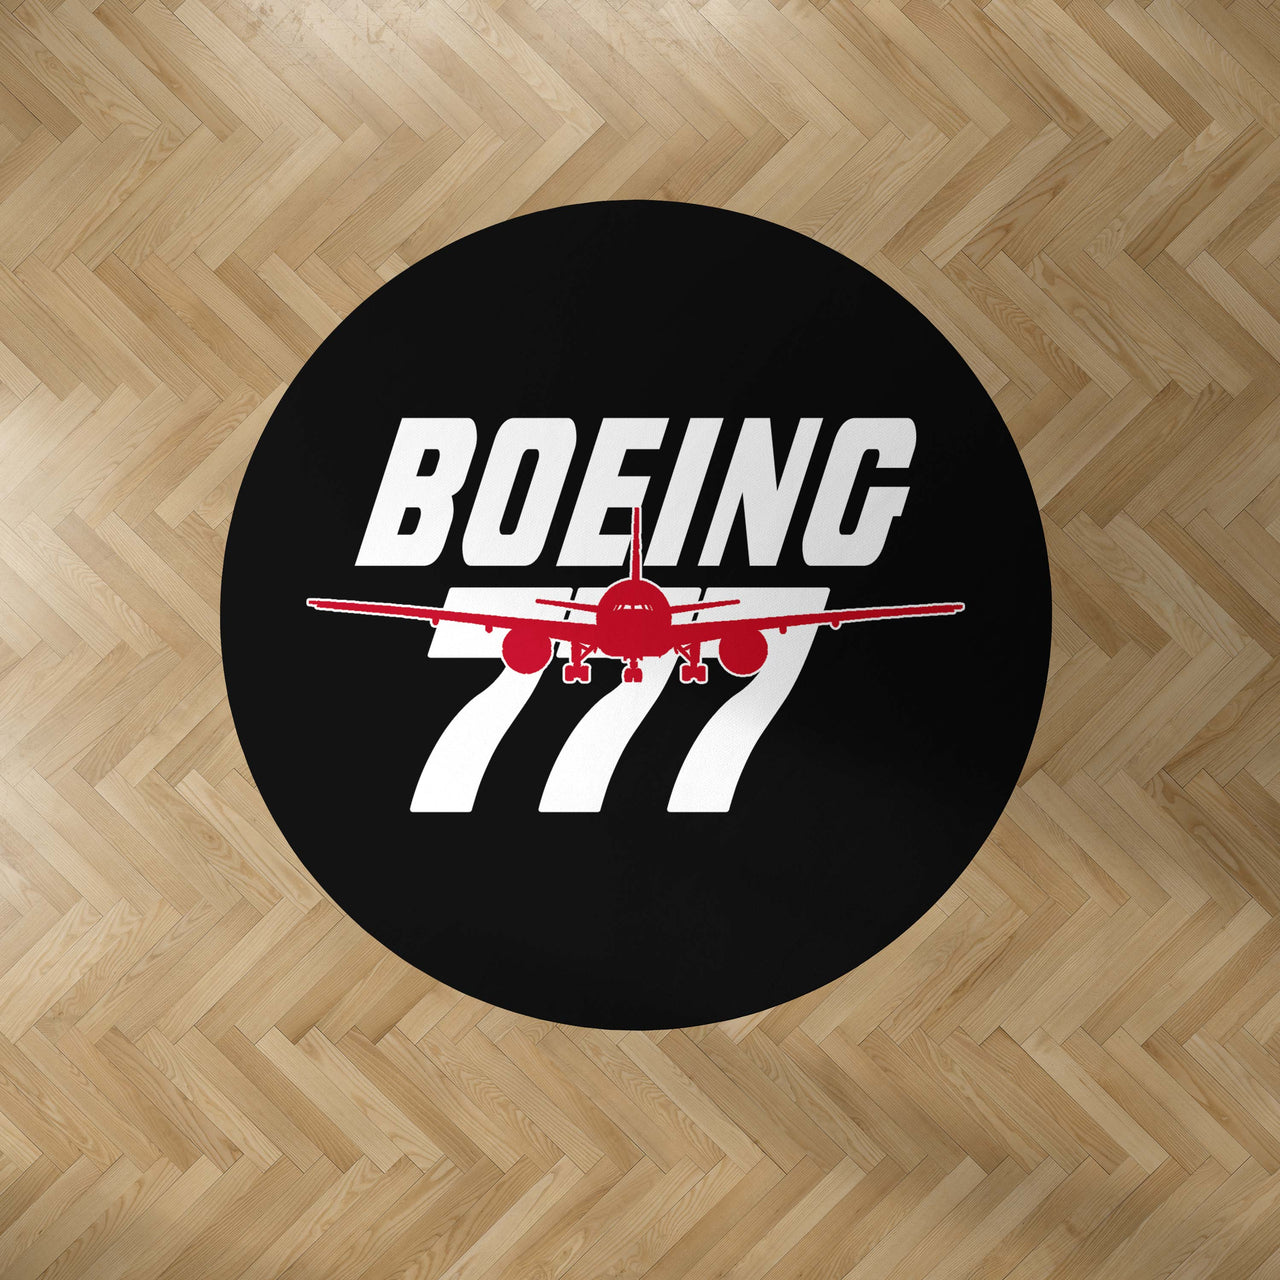 Amazing Boeing 777 Designed Carpet & Floor Mats (Round)